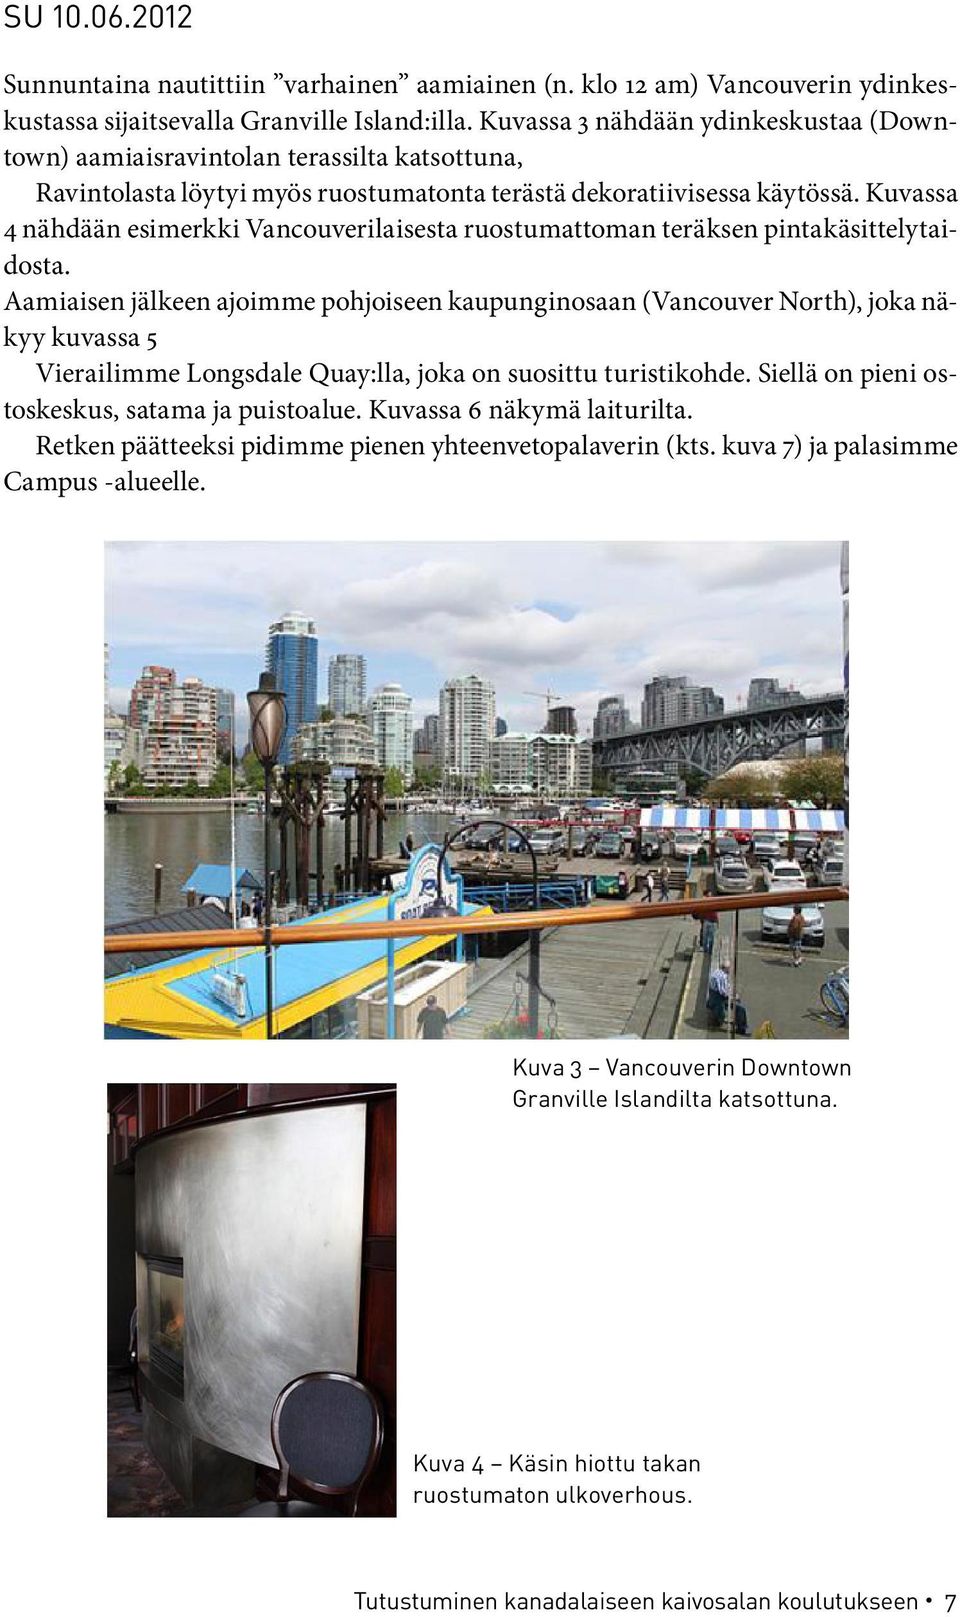 Kuvassa 4 nähdään esimerkki Vancouverilaisesta ruostumattoman teräksen pintakäsittelytaidosta.